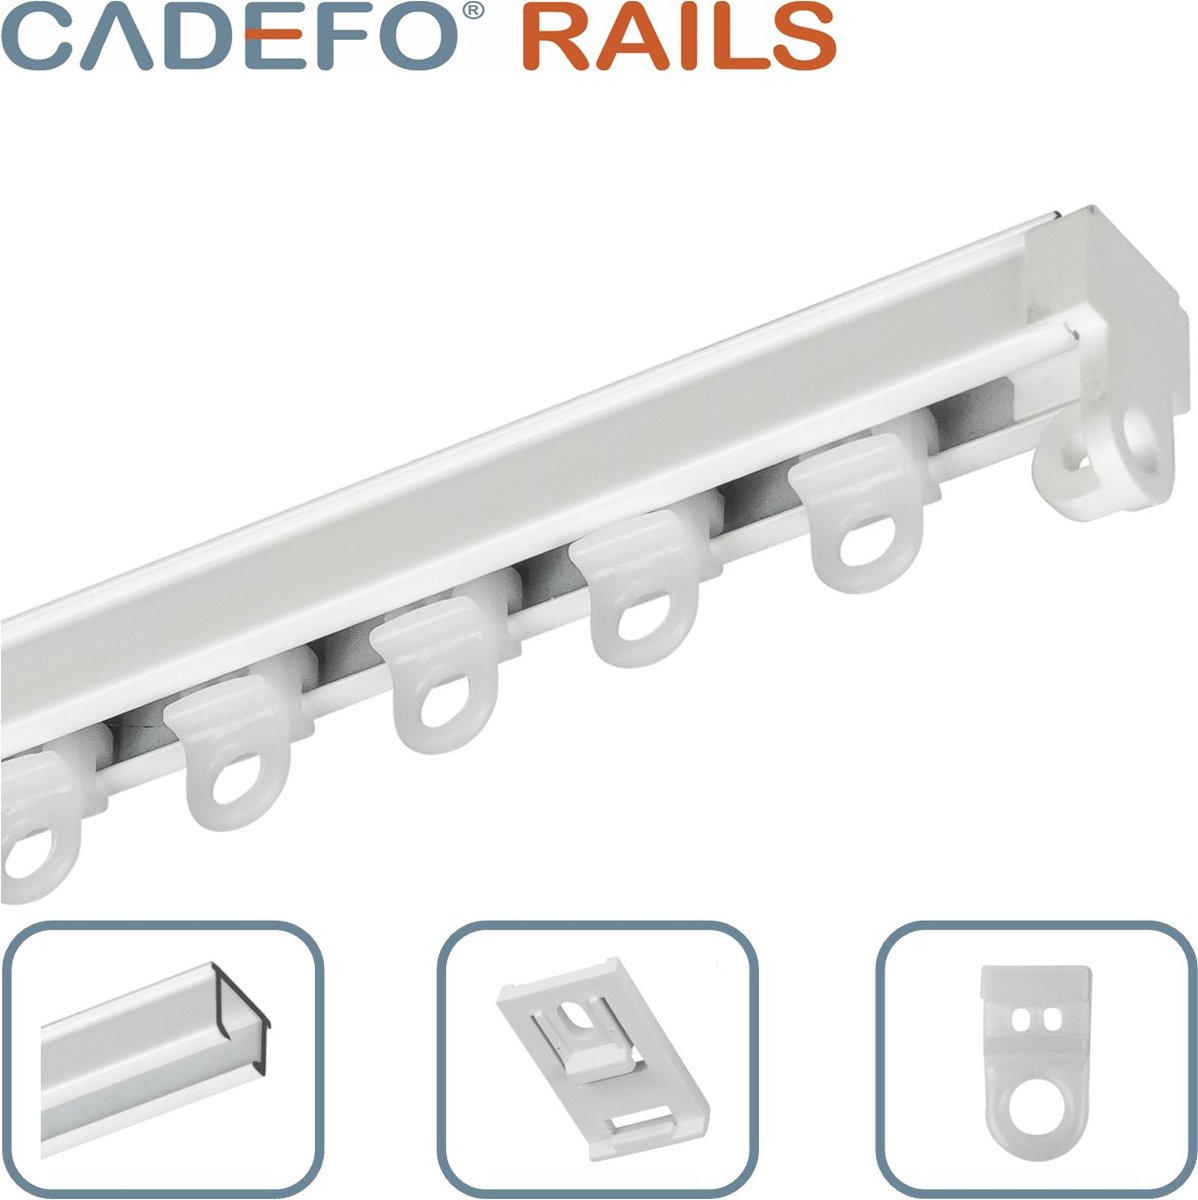 CADEFO RAILS (201 - 250 cm) Gordijnrails - Compleet op maat! - UIT 1 STUK - Leverbaar tot 6 meter - Plafondbevestiging - Lengte 207 cm